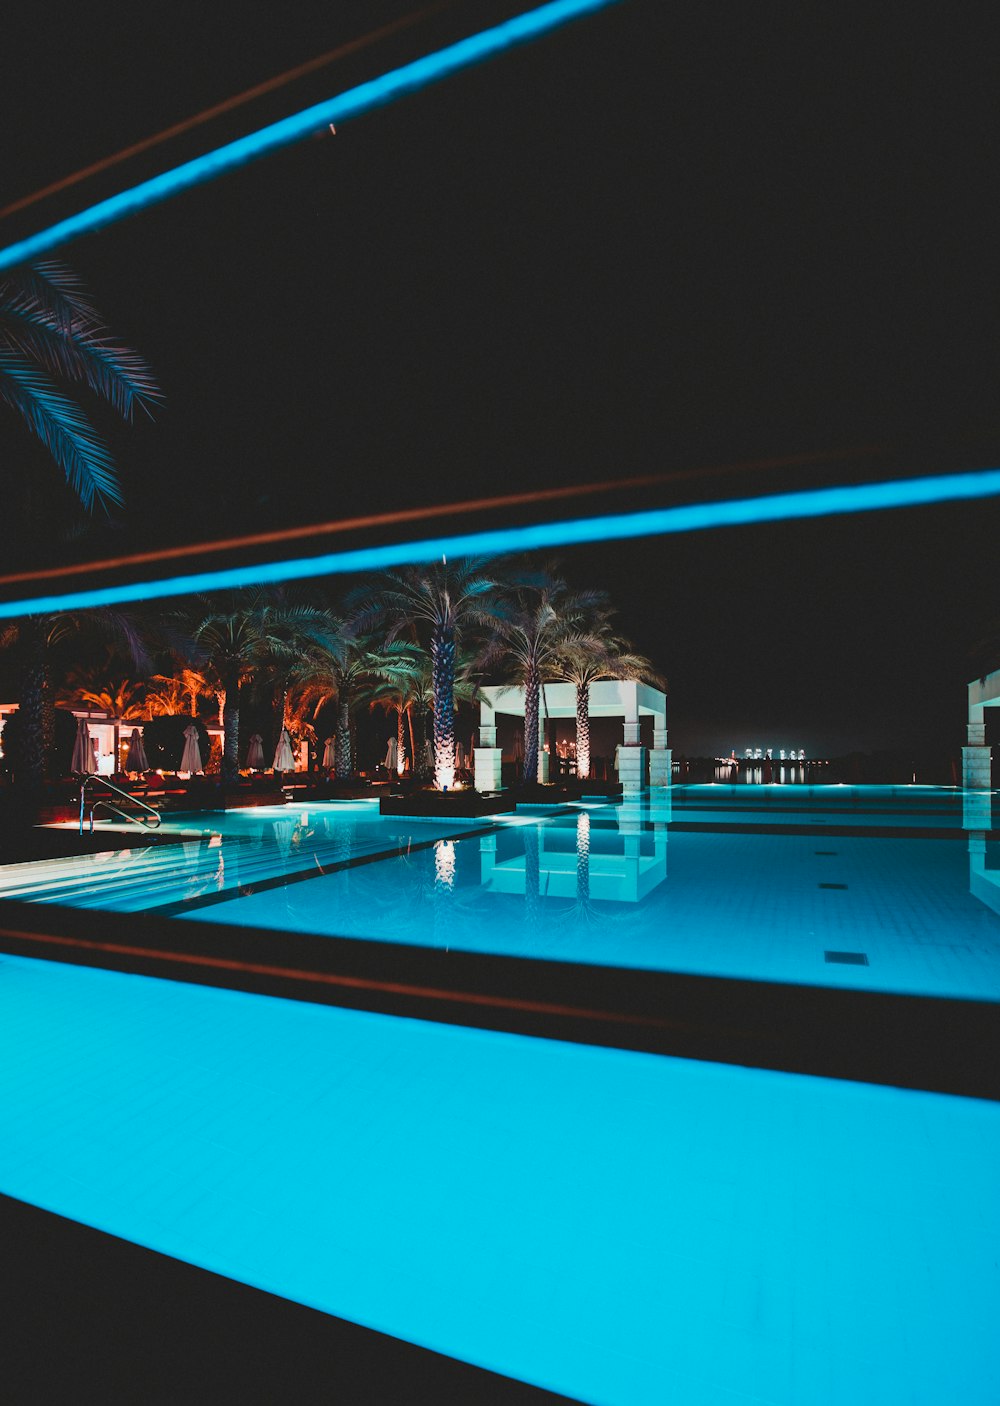 swimming pool at night-time